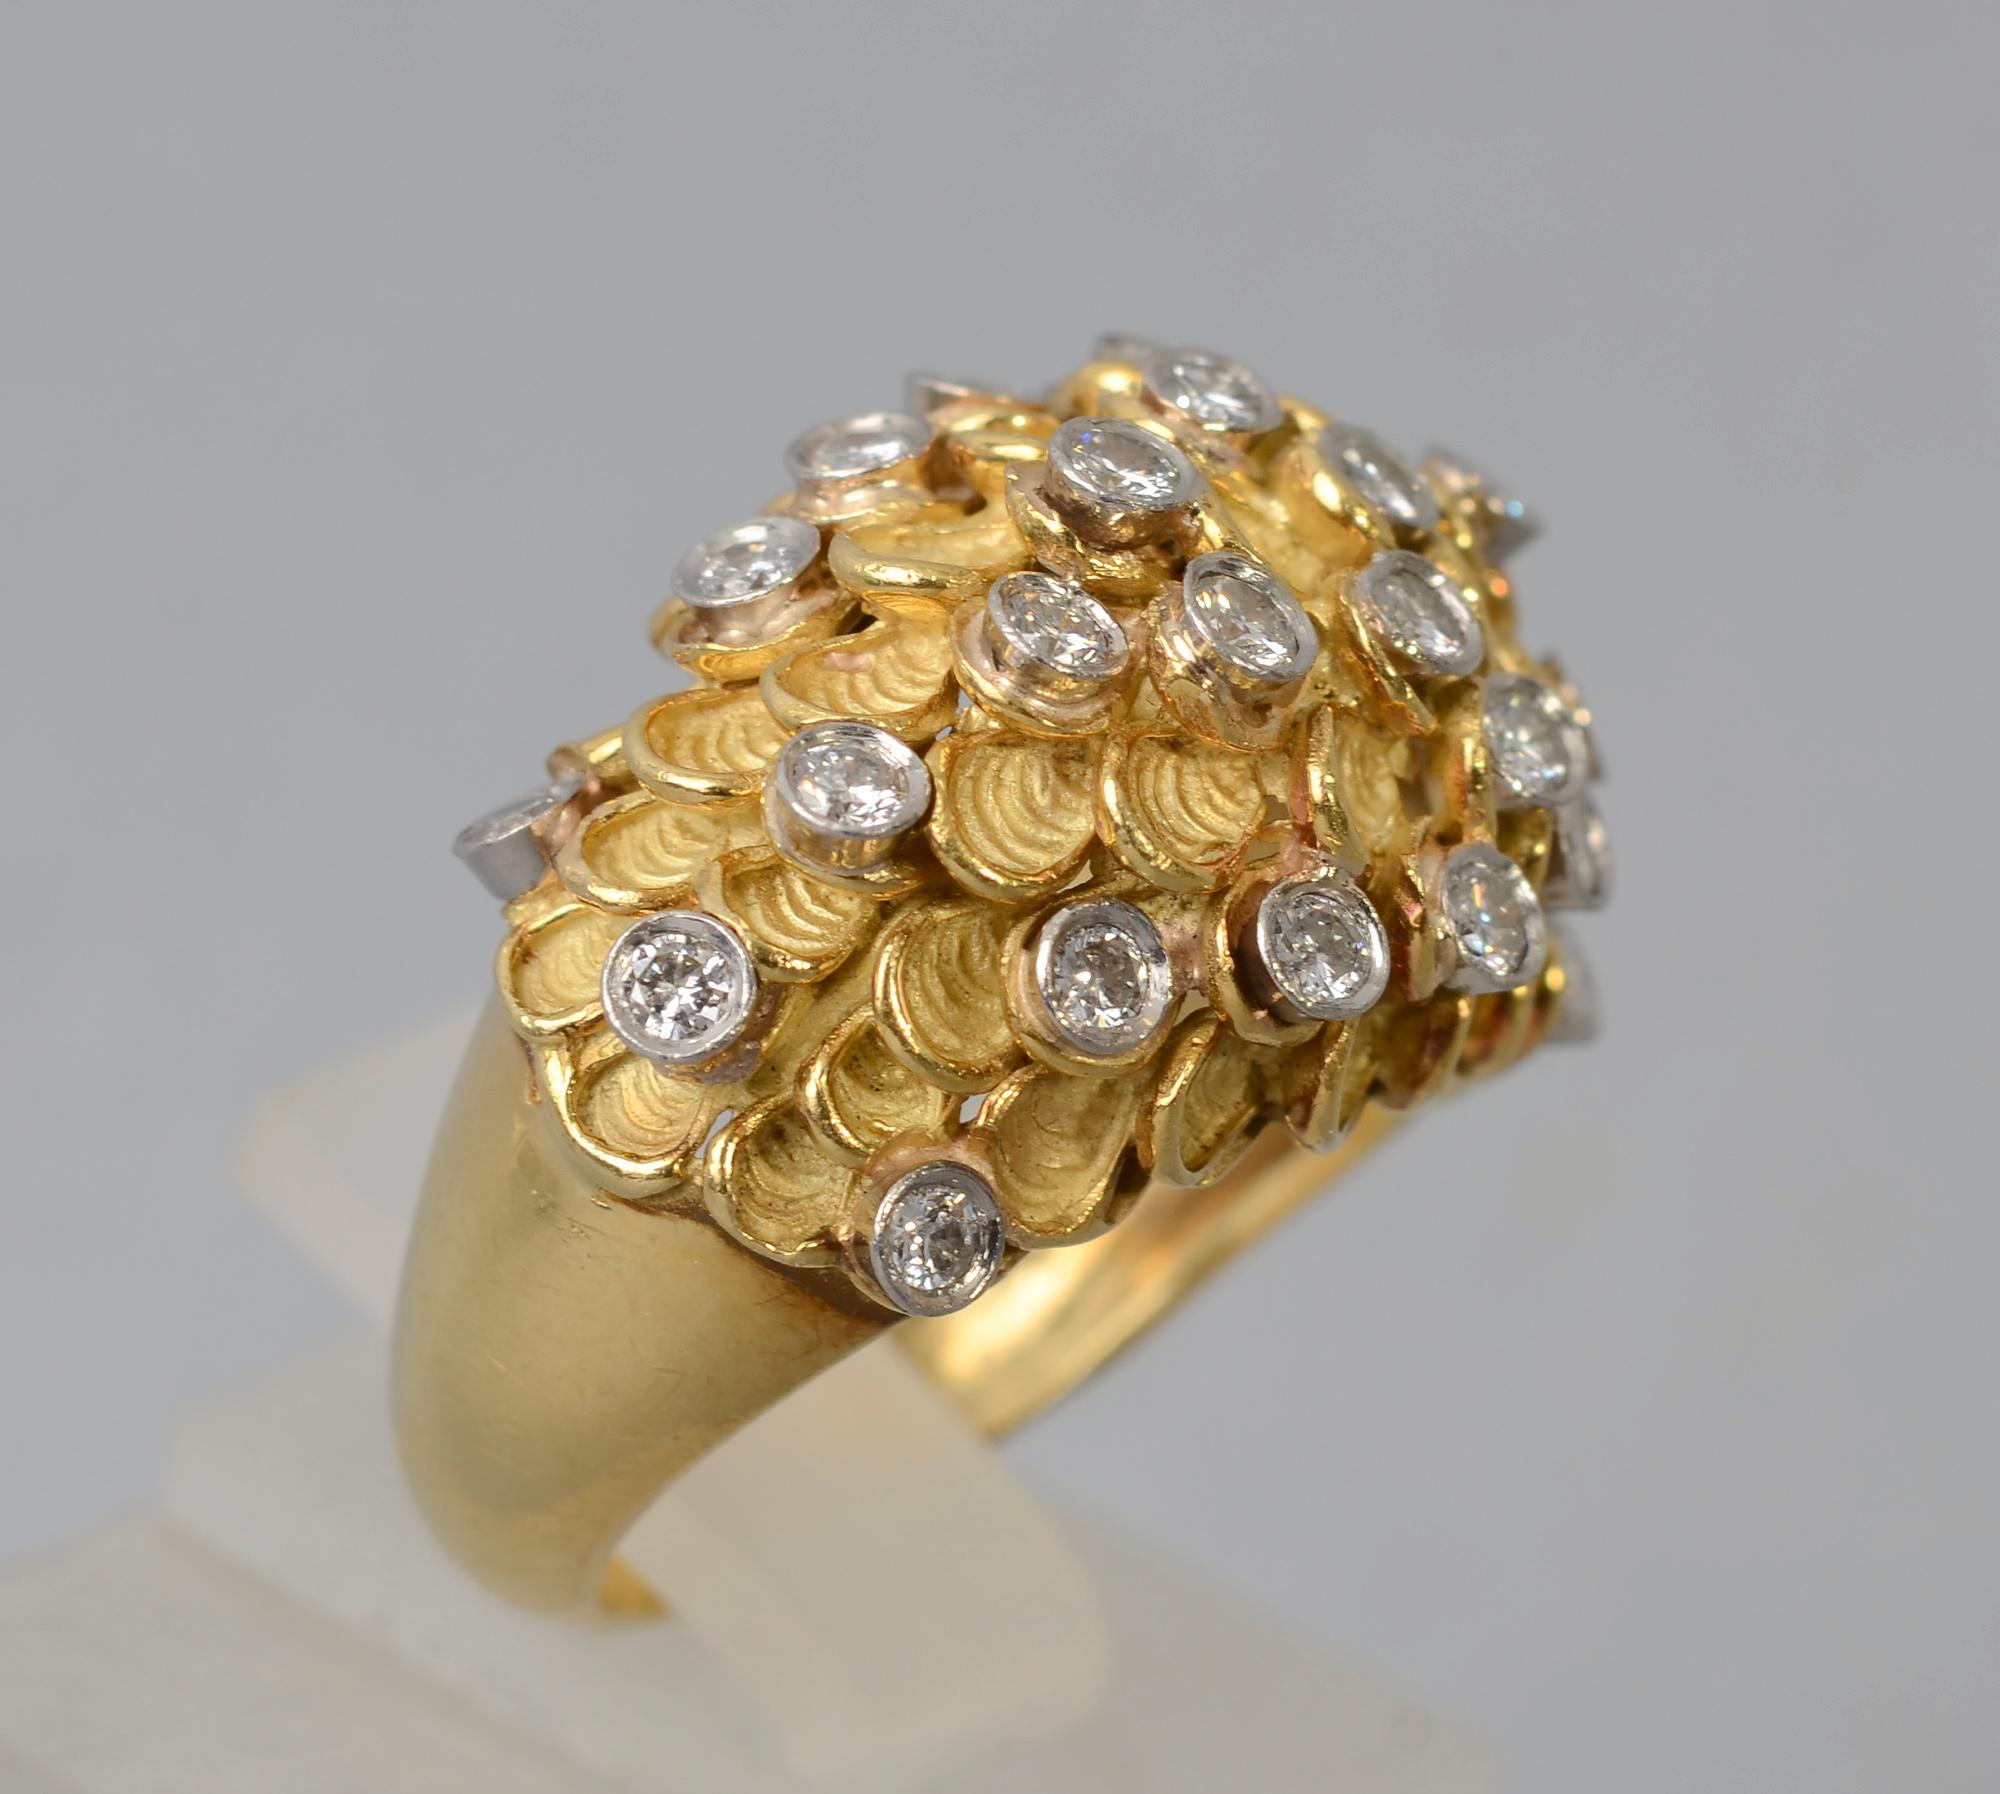 Ungewöhnlicher gewölbter Cocktailring aus 18 Karat Gold mit strukturierten Halbkreisen und Diamanten. Der Ring enthält 27 Diamanten im europäischen Schliff mit einem Gesamtgewicht von etwa einem Karat. Es gibt eine teilweise Herstellermarke, die